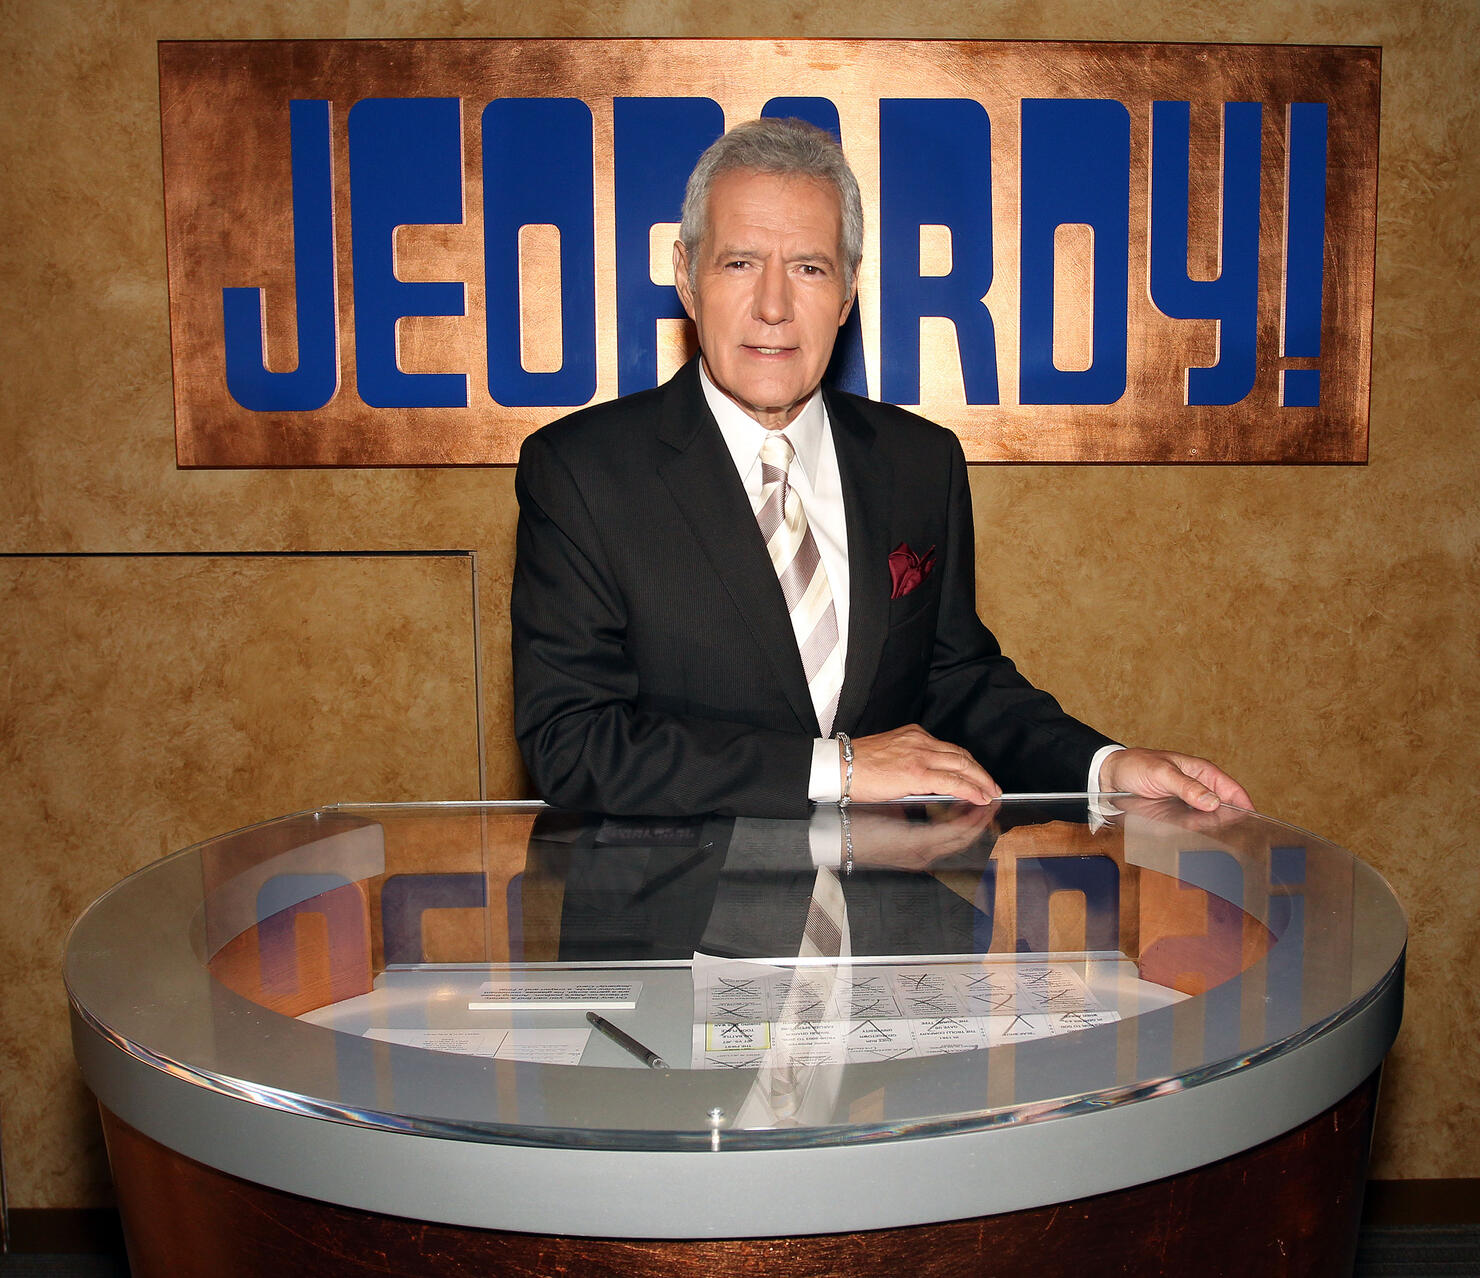 28th Season Premiere Of "Jeopardy!"